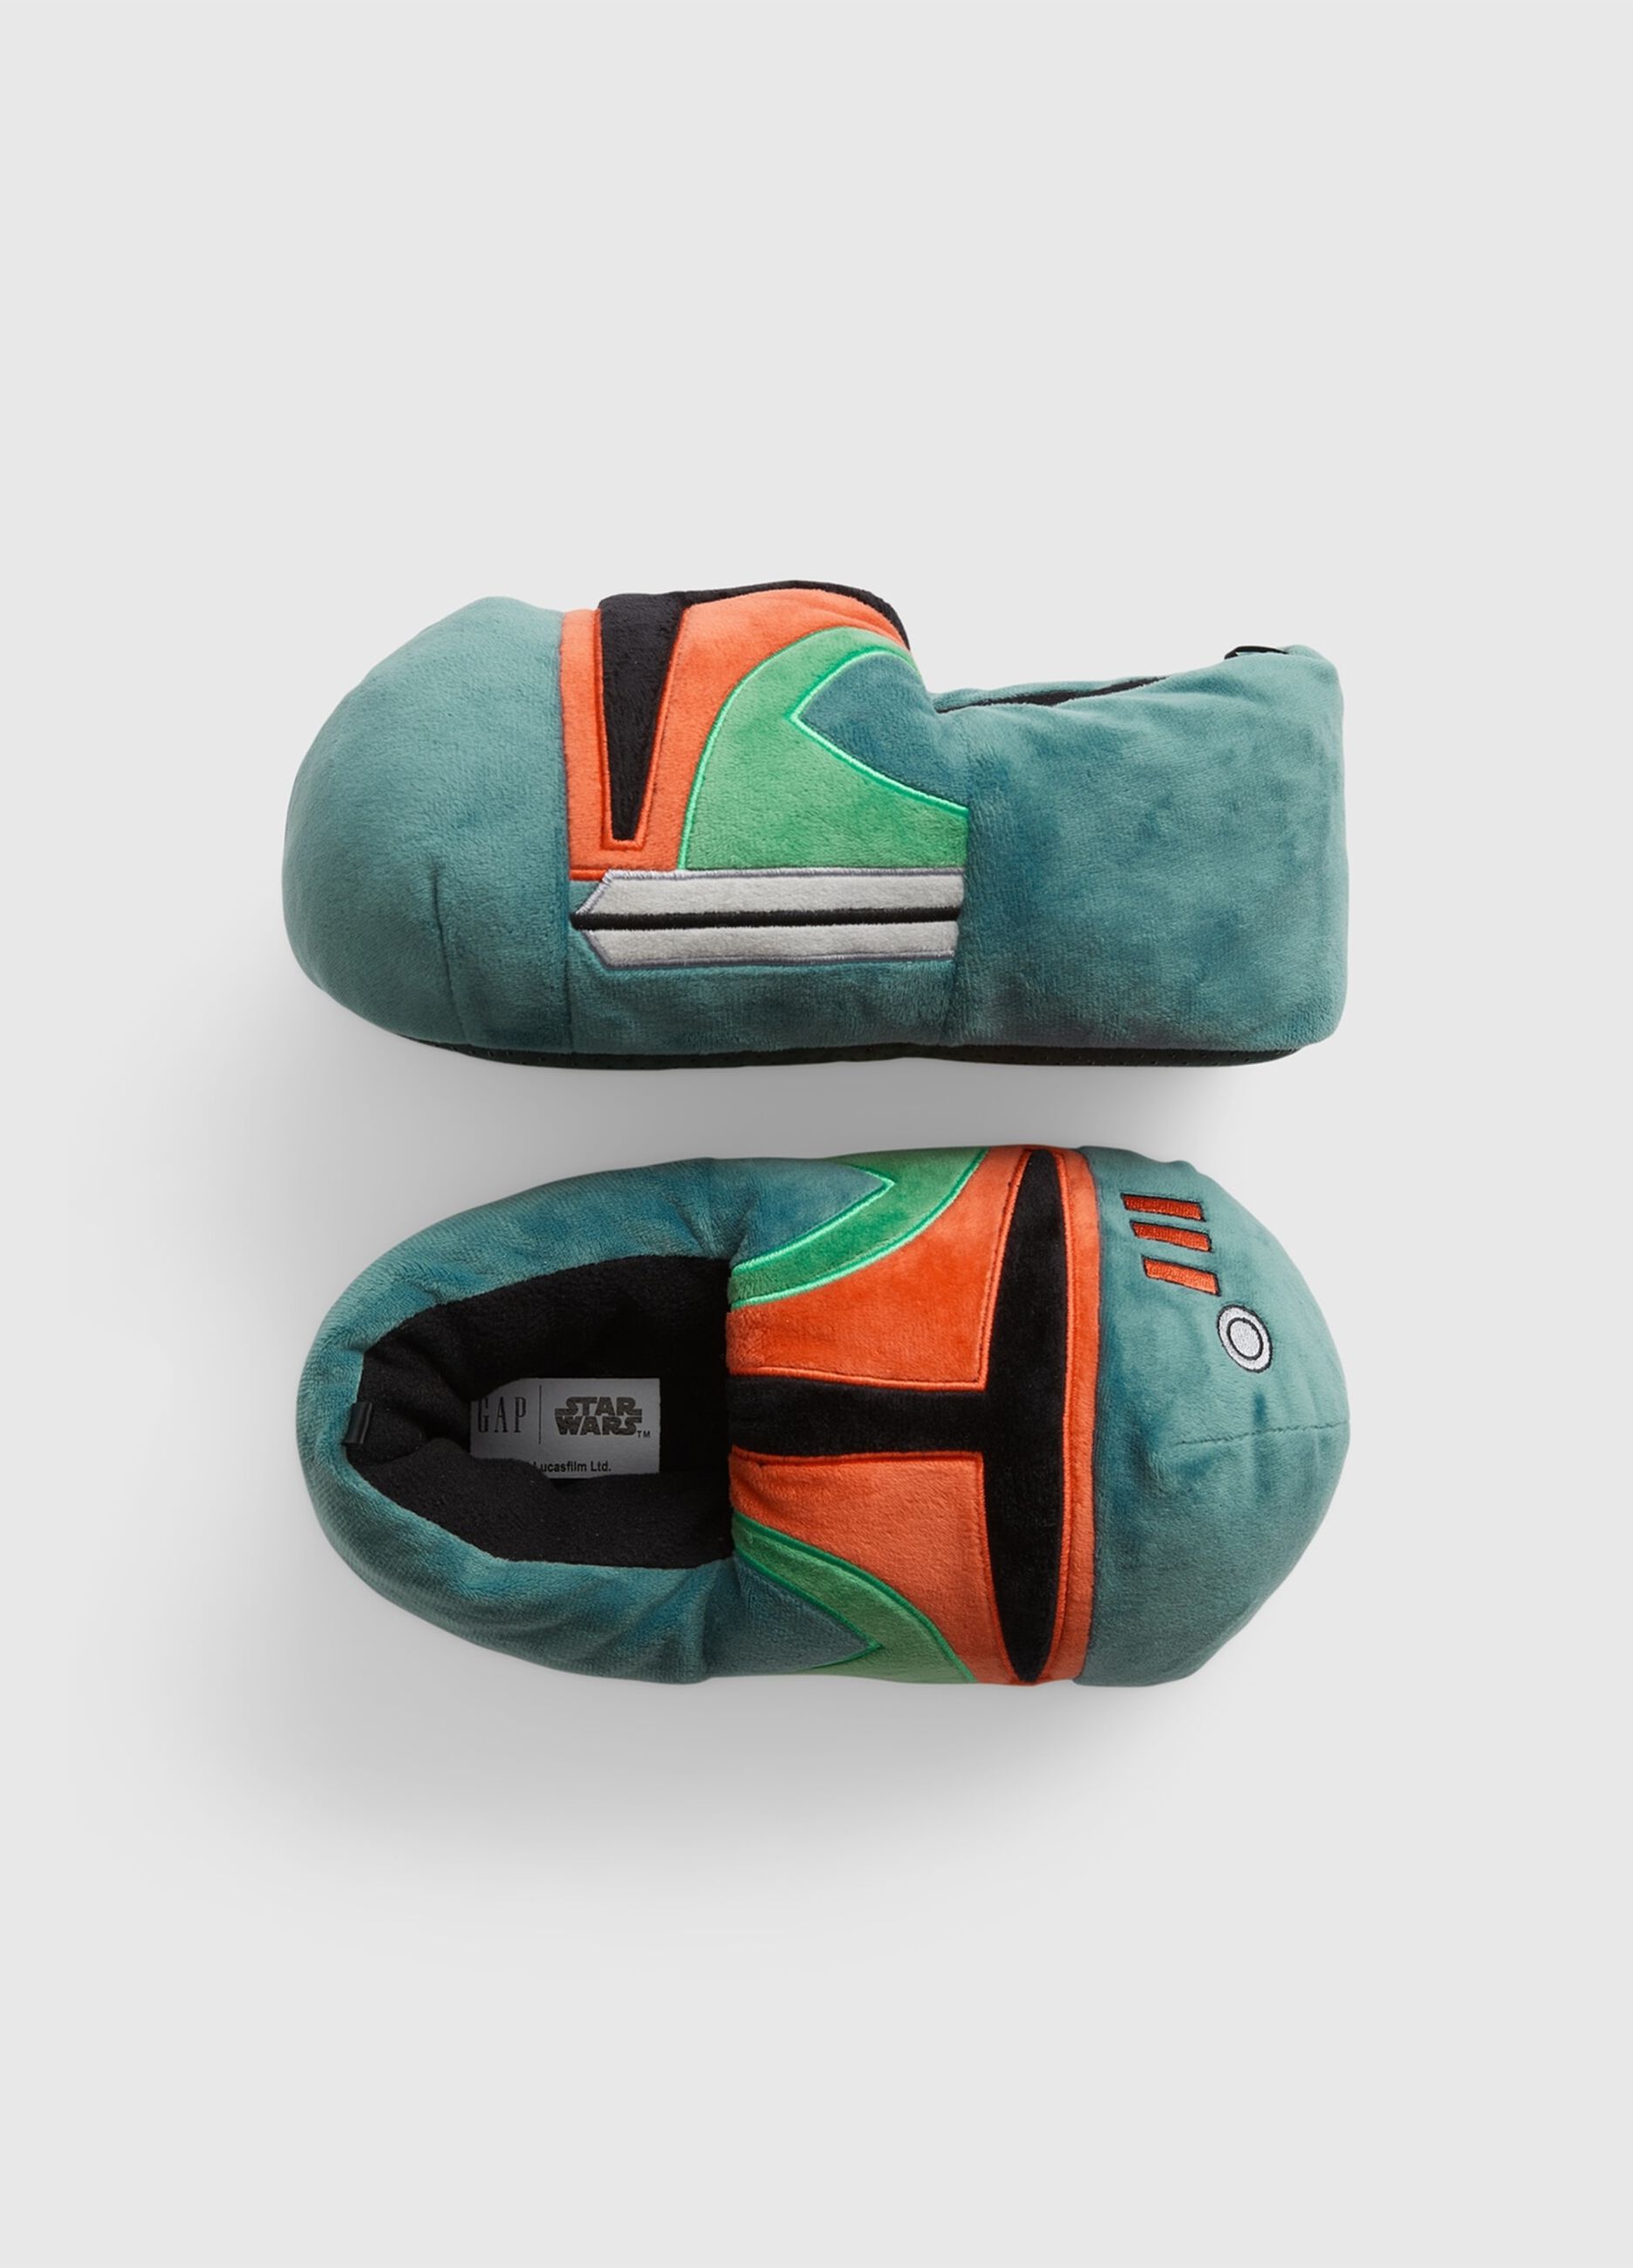 Star Wars Boba Fett slippers